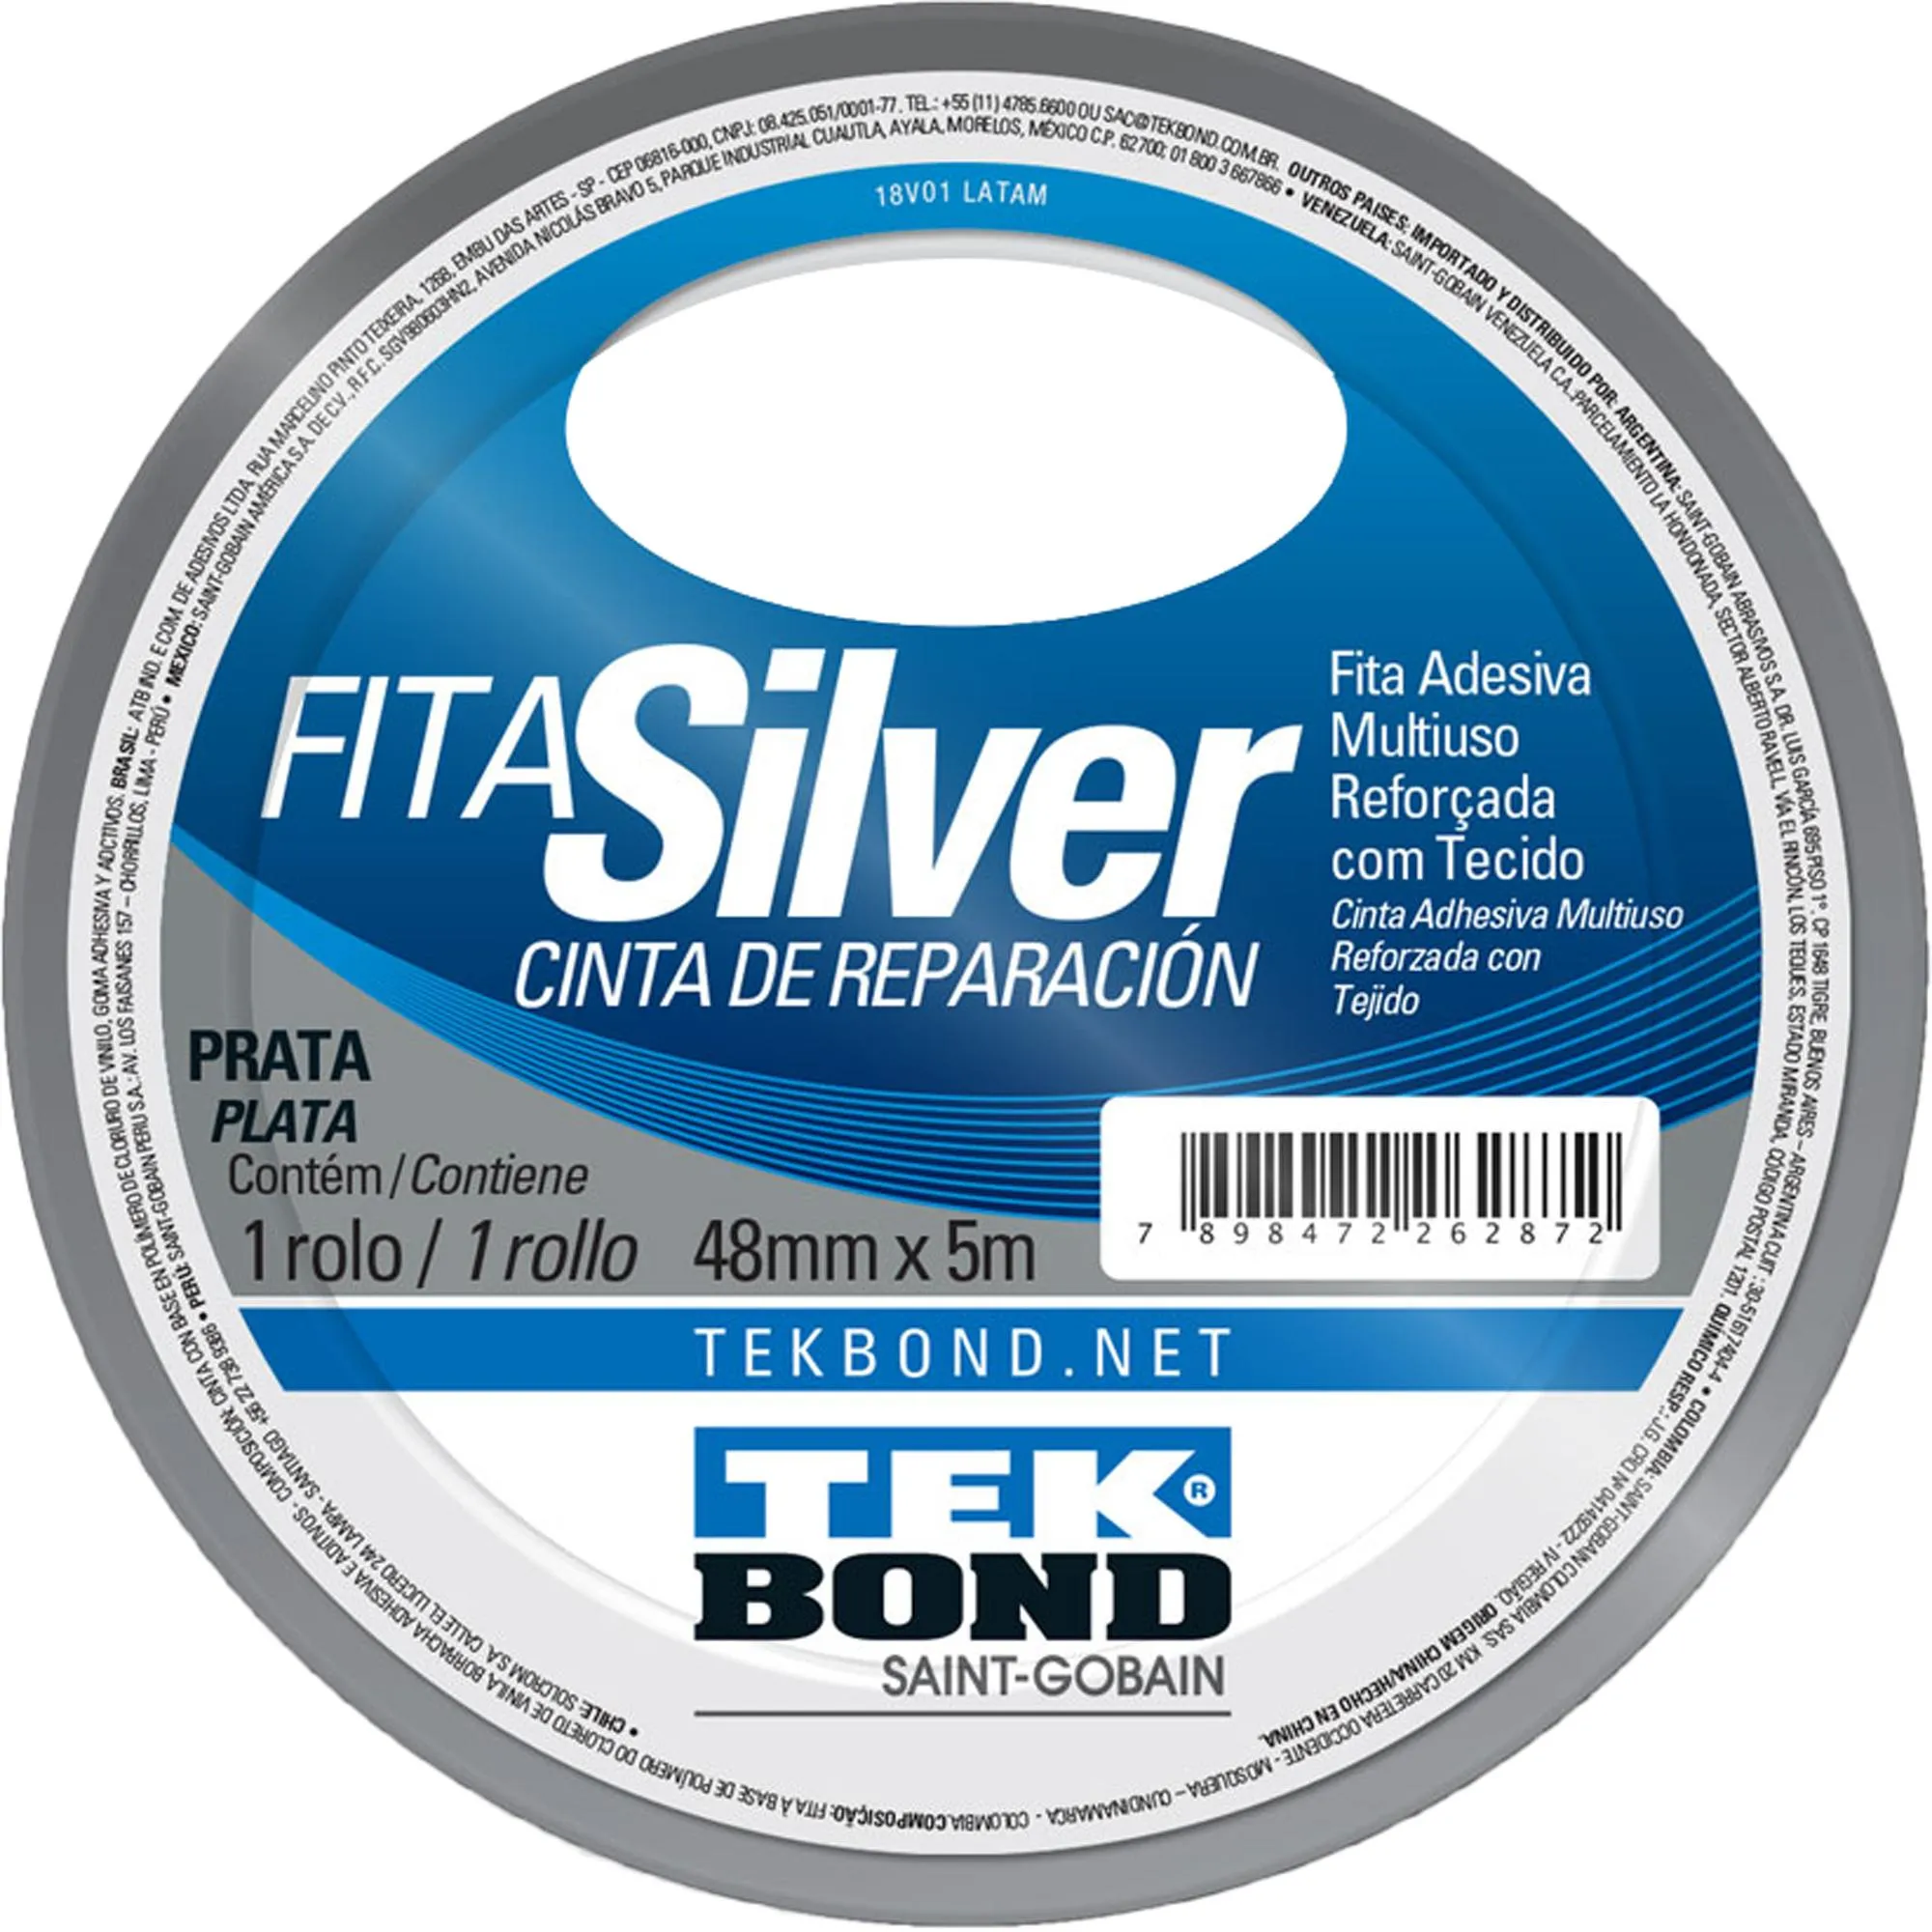 Fita Silver 48mmx5m Prata Tekbond por 9,99 à vista no boleto/pix ou parcele em até 1x sem juros. Compre na loja Mundomax!